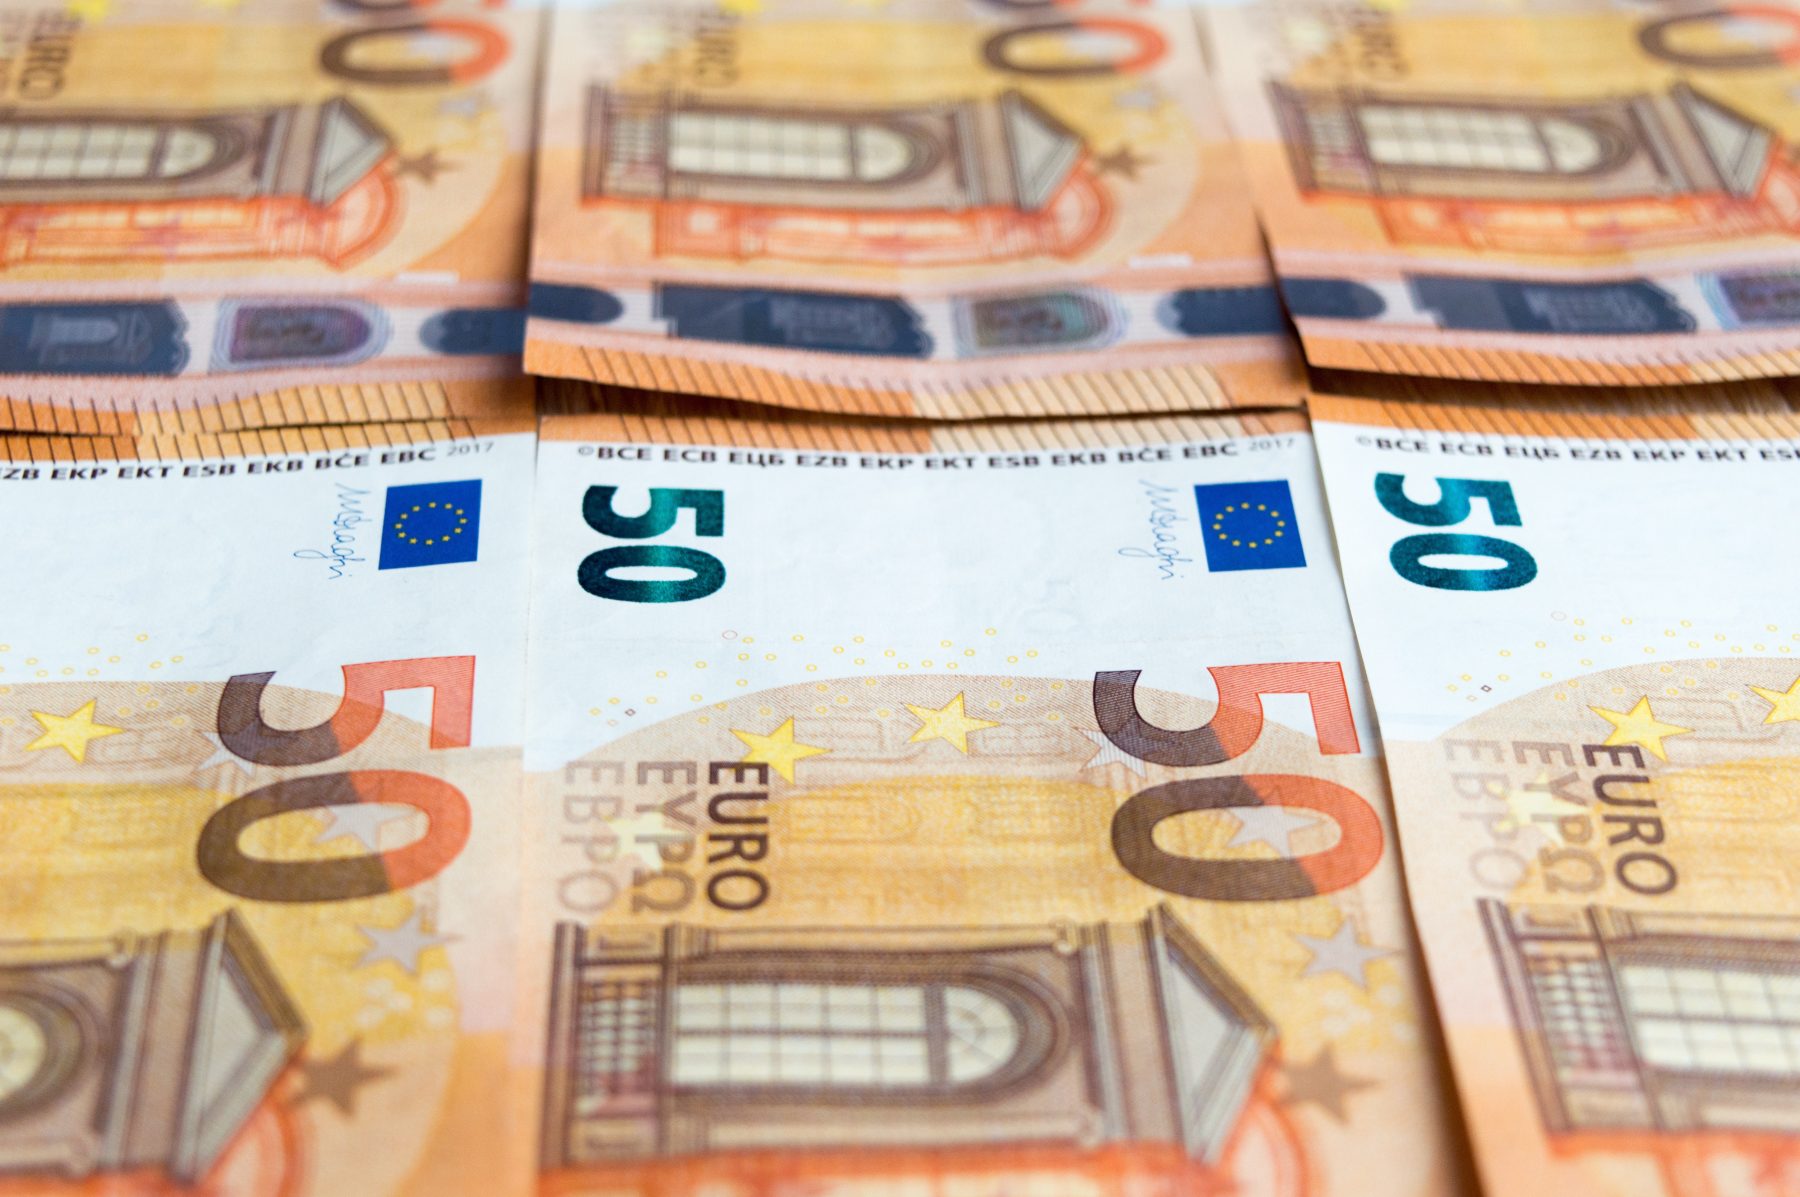 La loi spéciale de financement : un levier de négociation flamand qui déstabilise la Wallonie